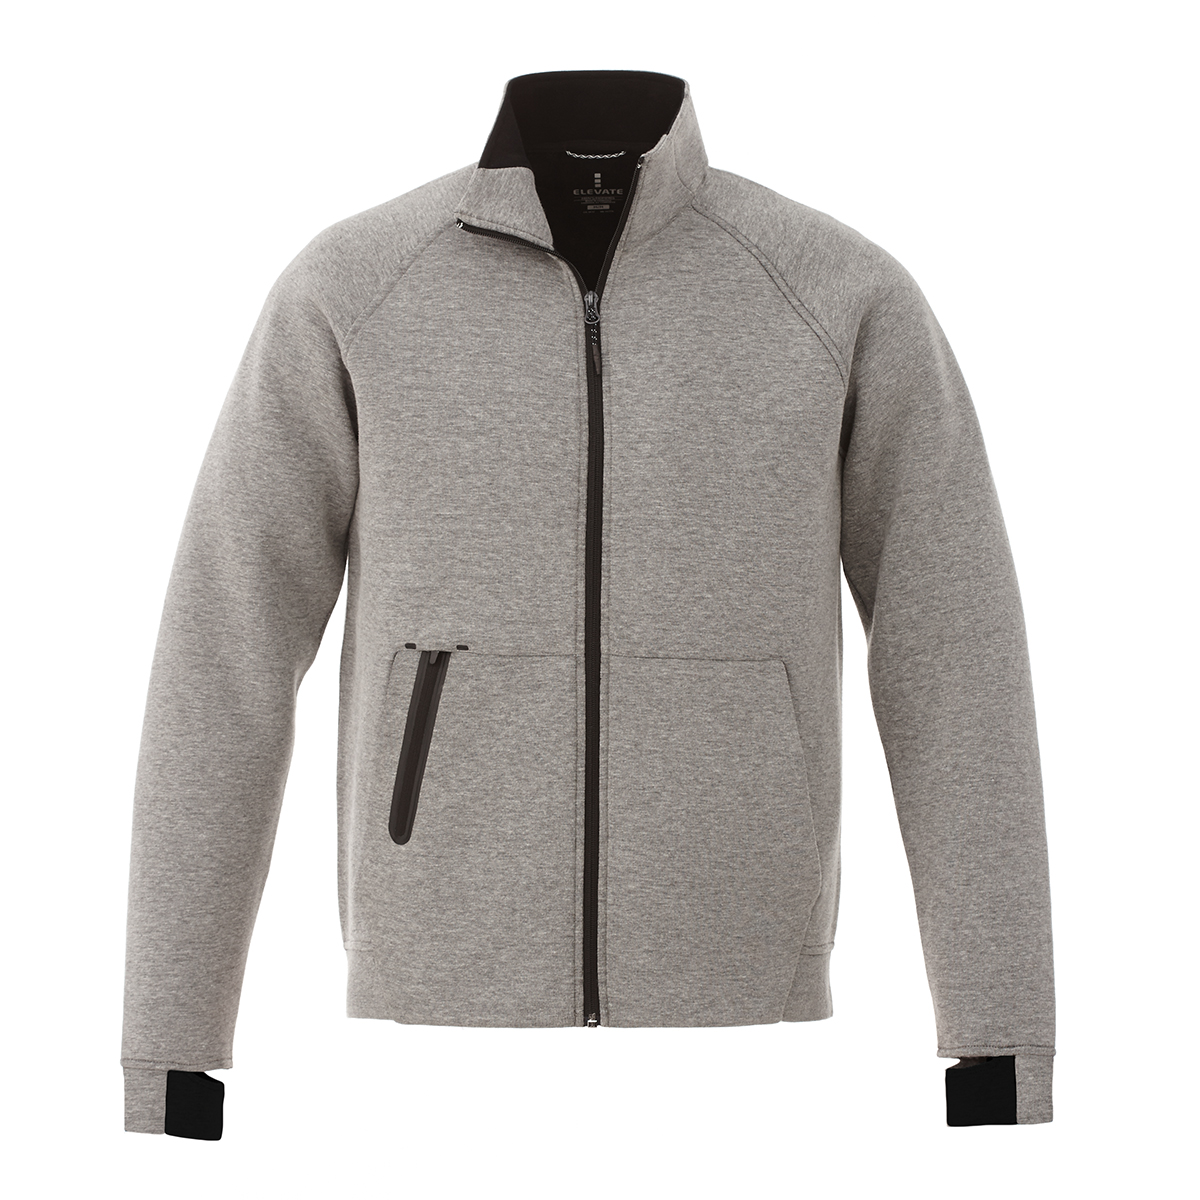 Medremj - LVxNBA Knit Jacket Price : 270000MNT Size : XS-L